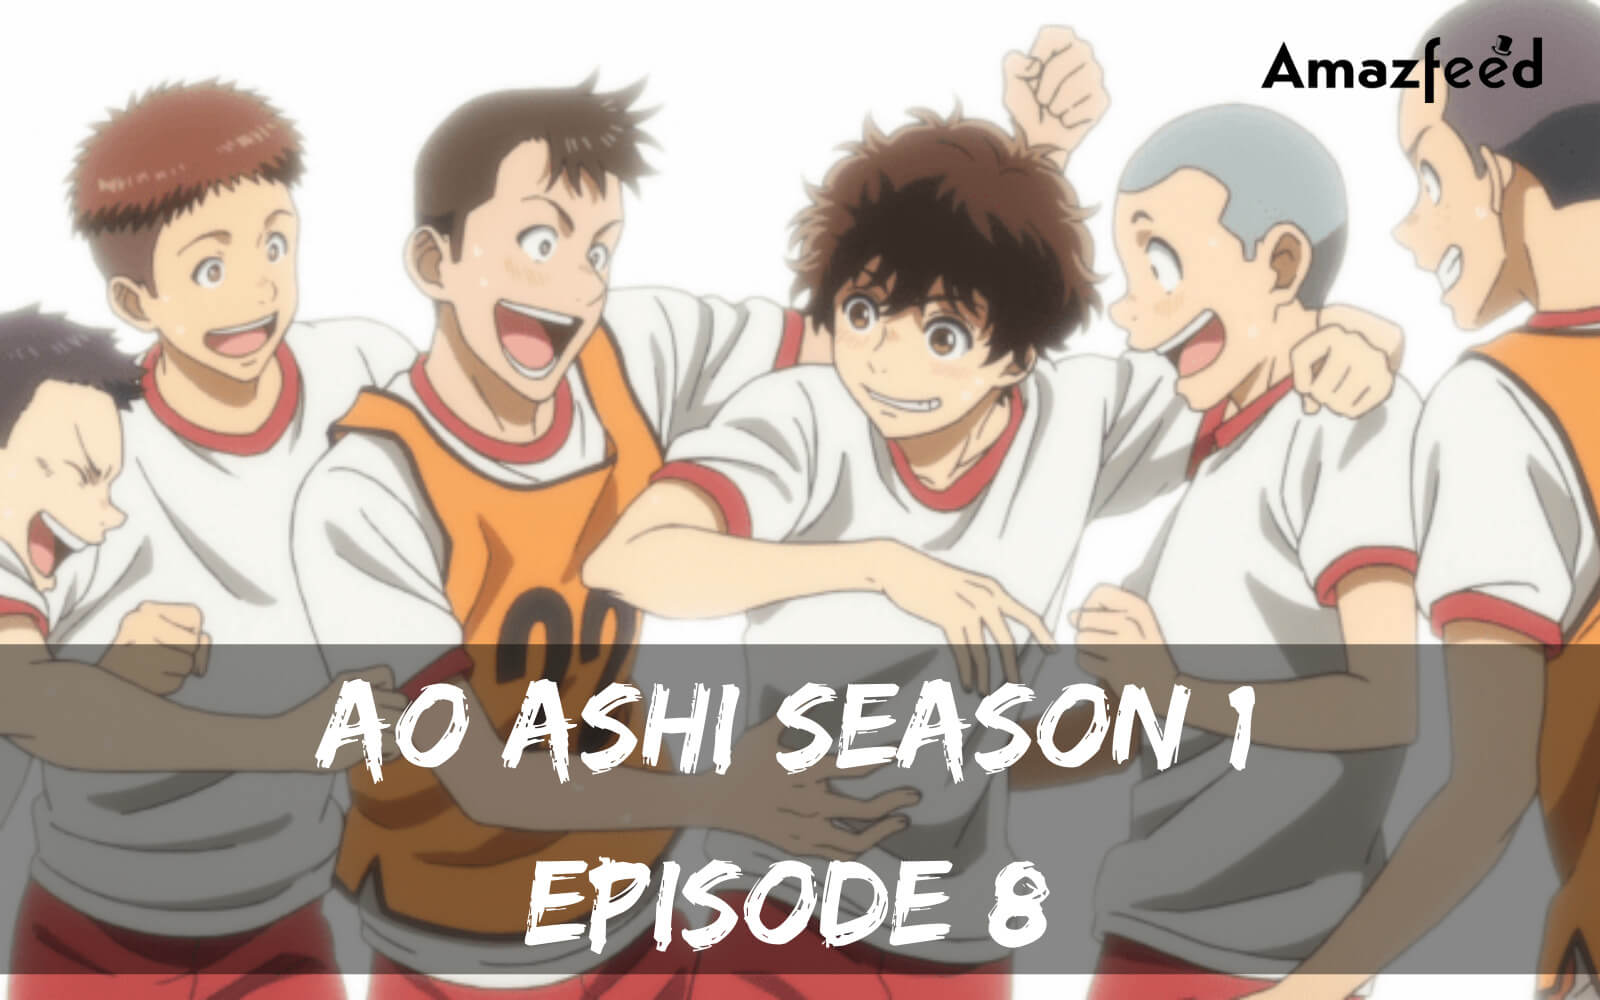 Ao Ashi season 1 Episode 8 release date